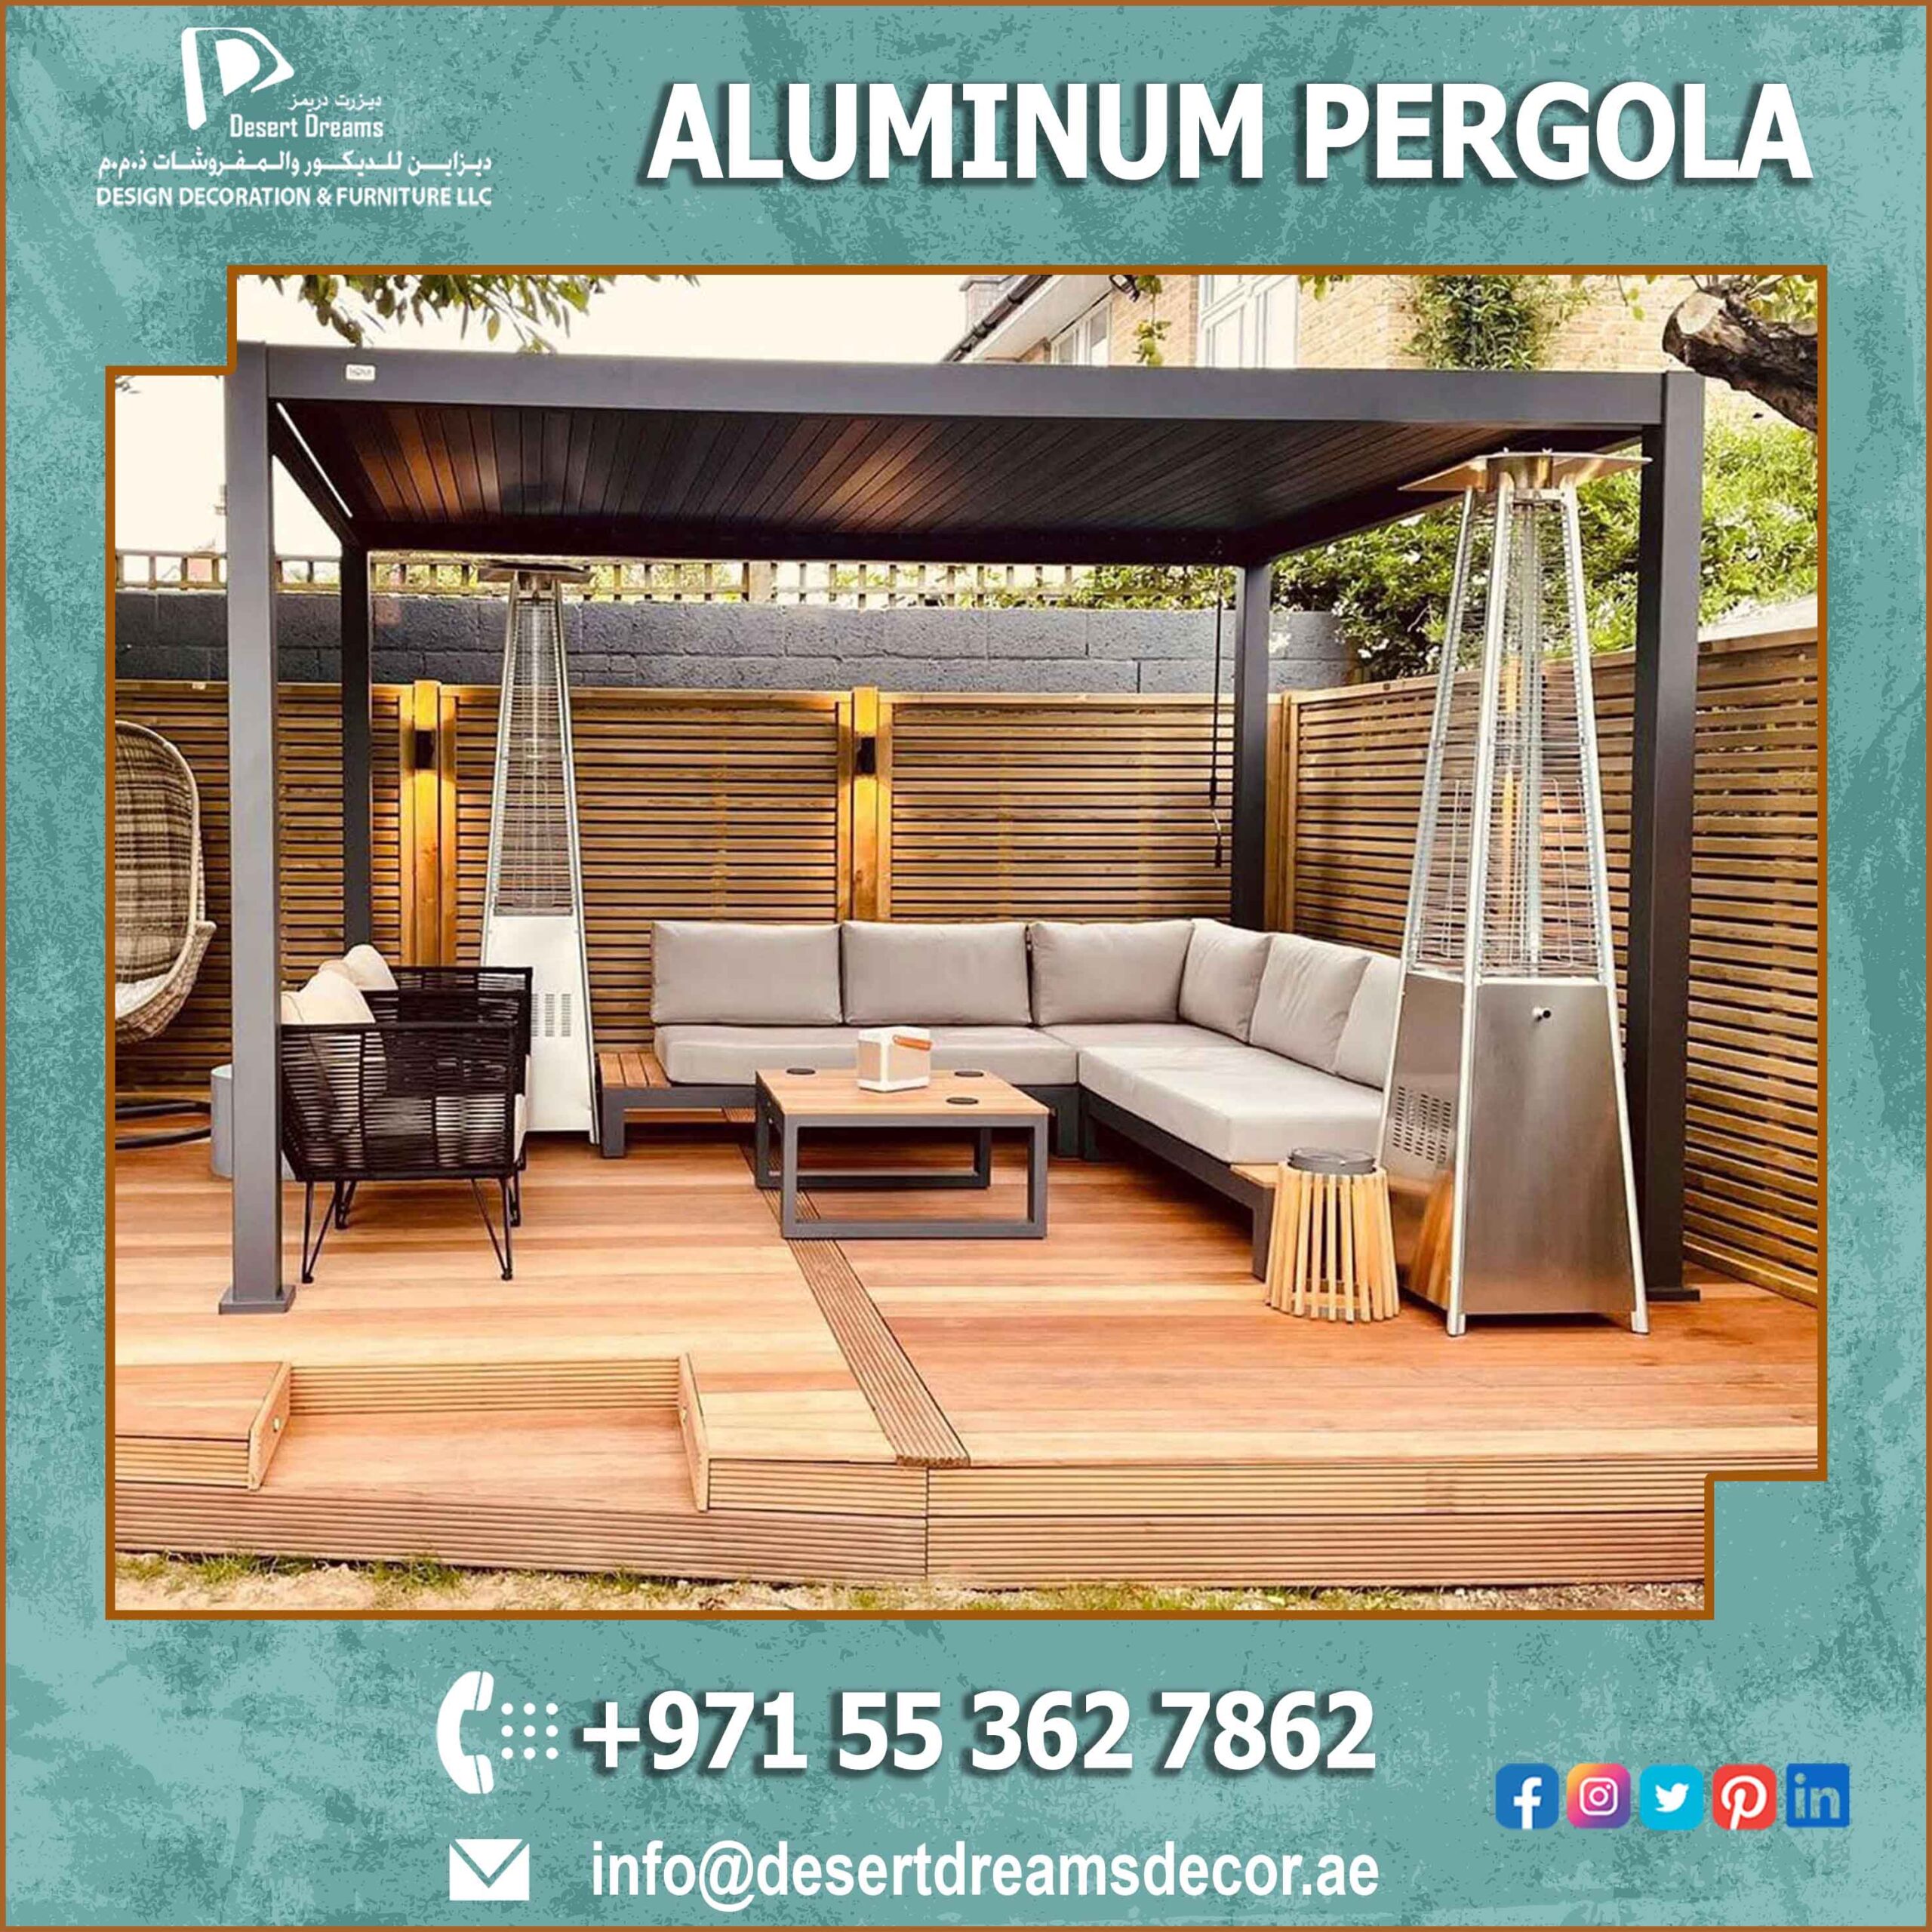 Quality Aluminum Pergola in Uae | Premium Aluminum Pergola Dubai.